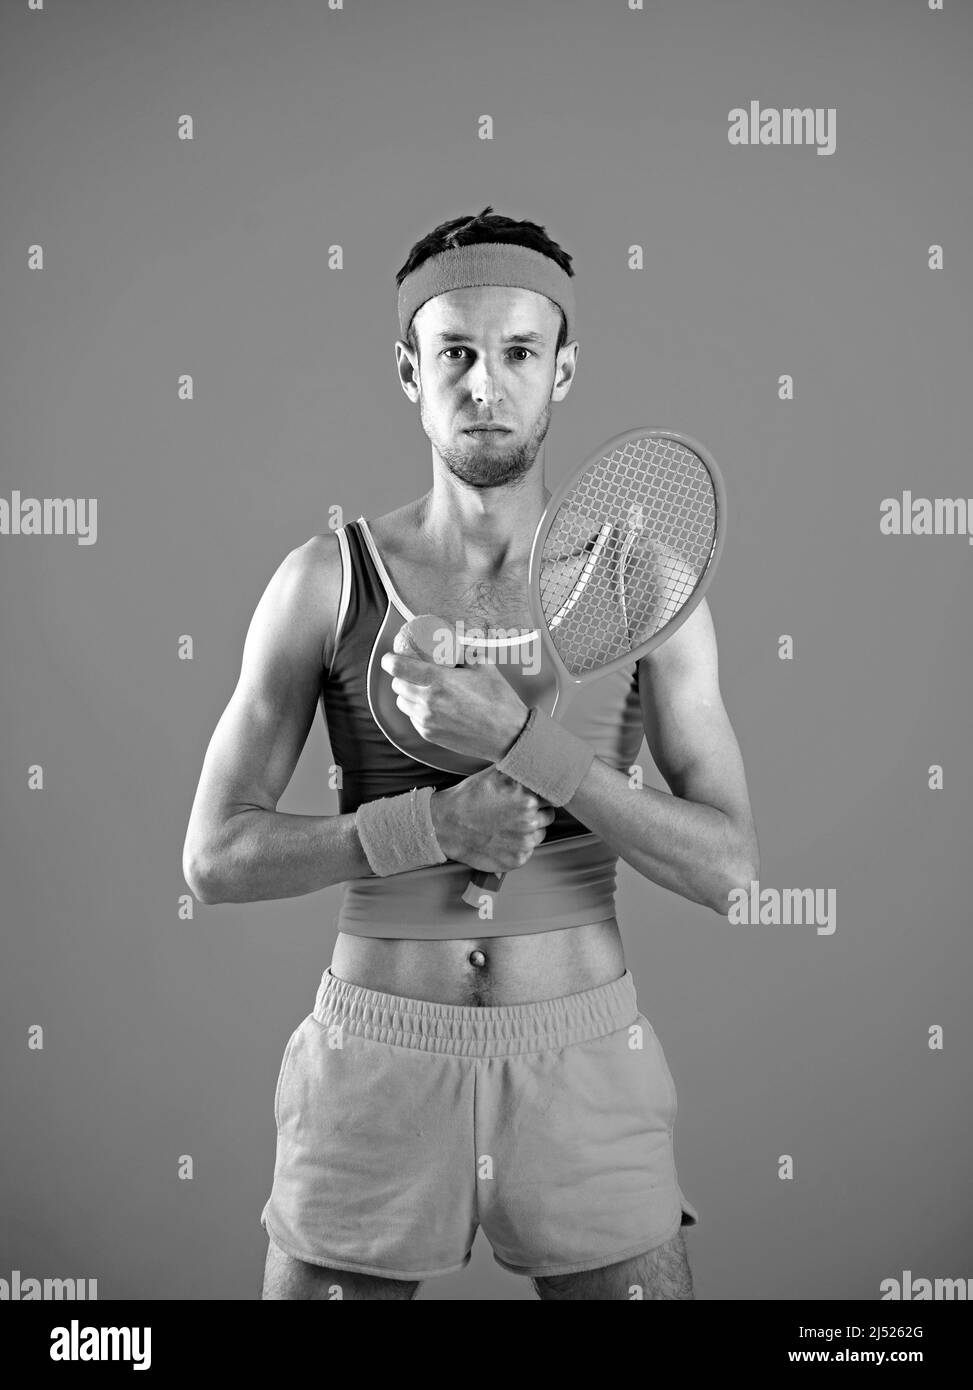 Jeune homme attrayant en costume décontracté tenant une raquette et un ballon de tennis Banque D'Images